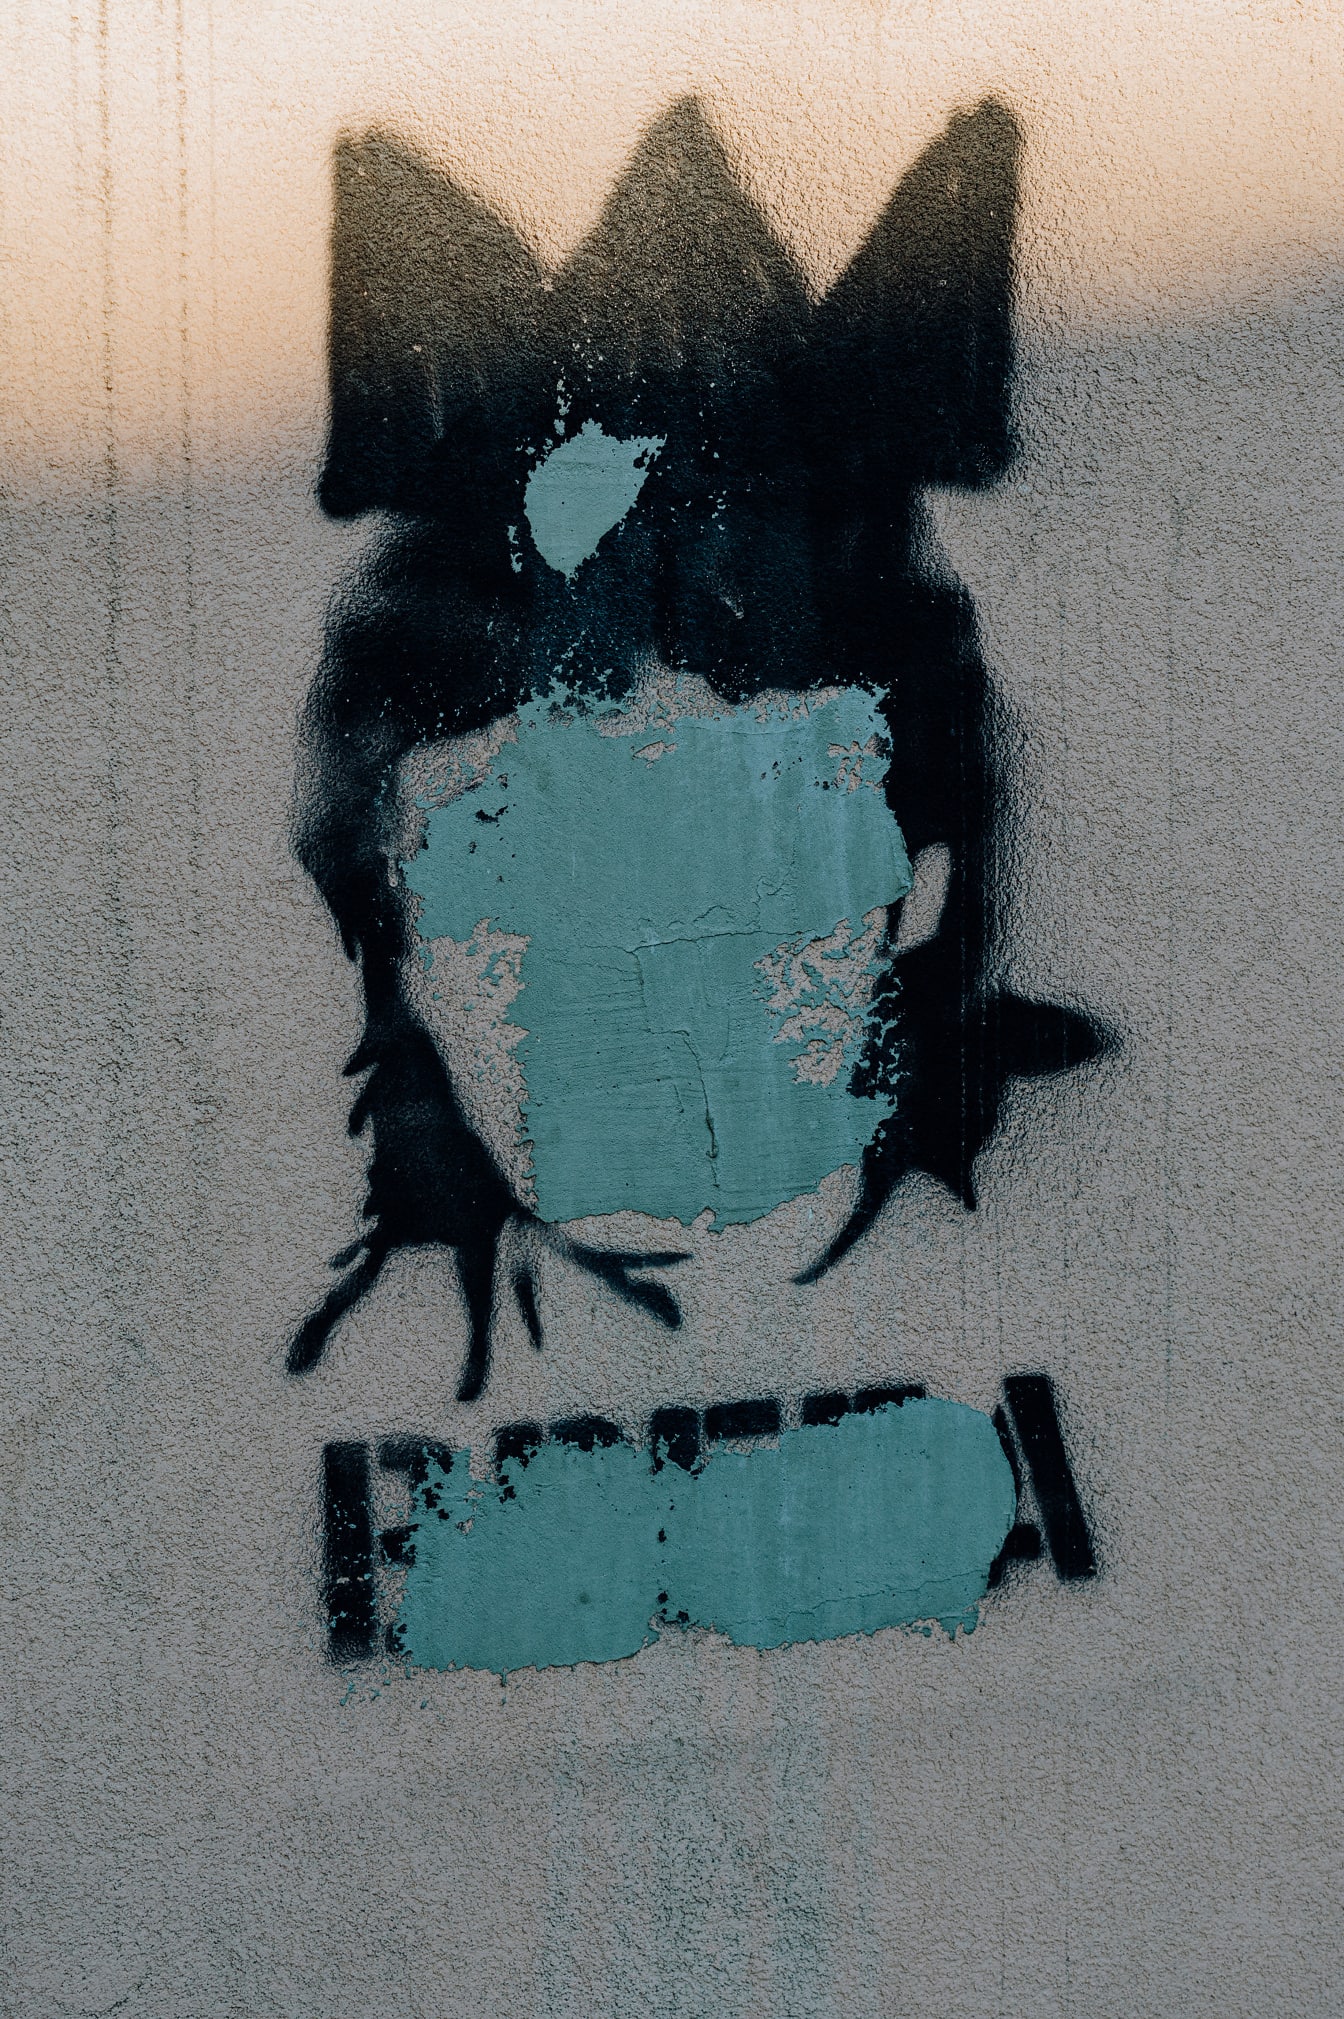 Coretan kepala hitam dengan vandalisme perkotaan wajah yang dicat berlebihan